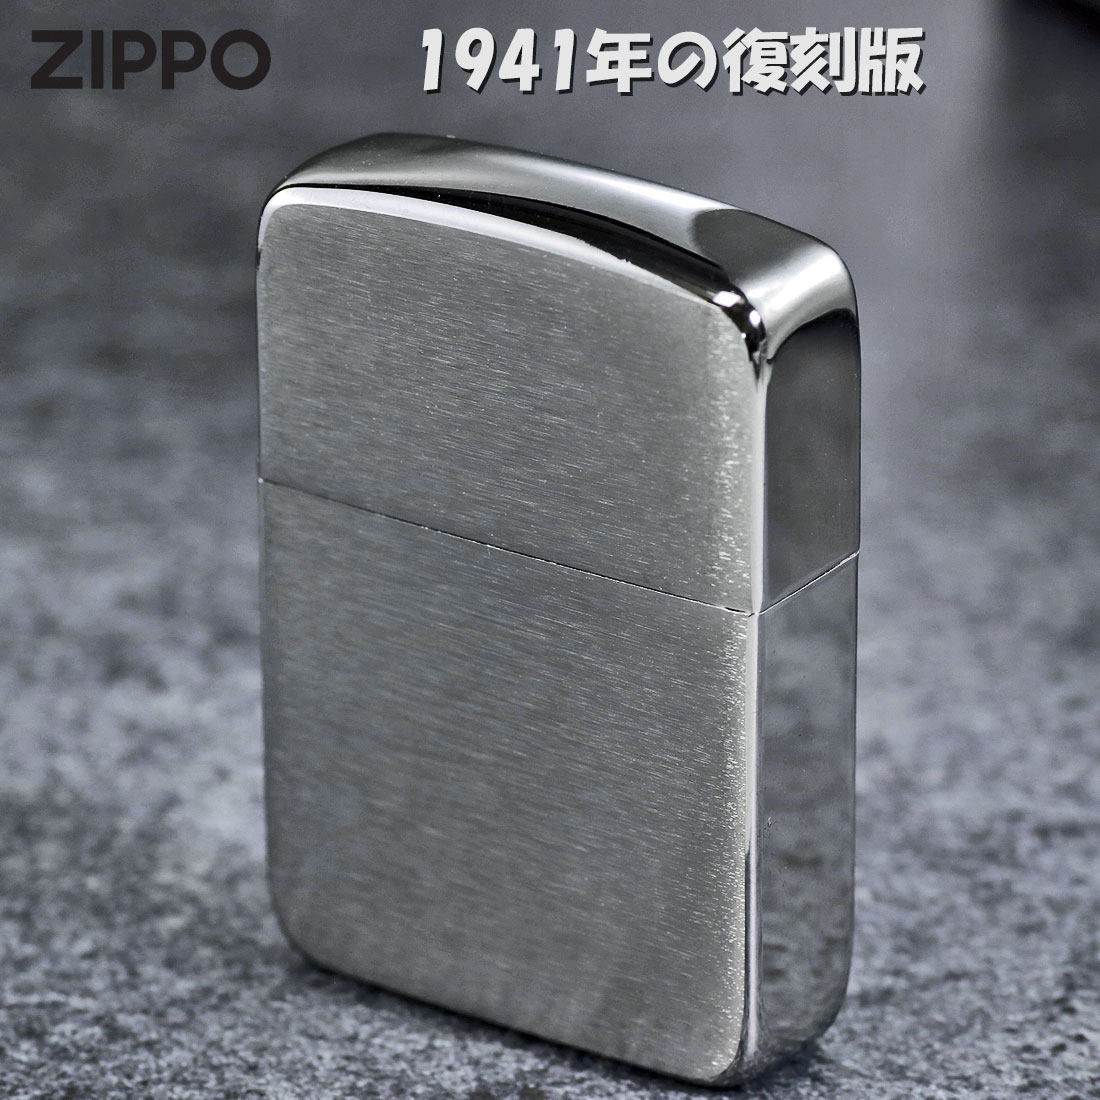 zippo ライター ジッポ 1941 レプリカ ジッポー ブラッシュクローム ライター ジッポライター ZIPPO lighter（ネコポス対応）